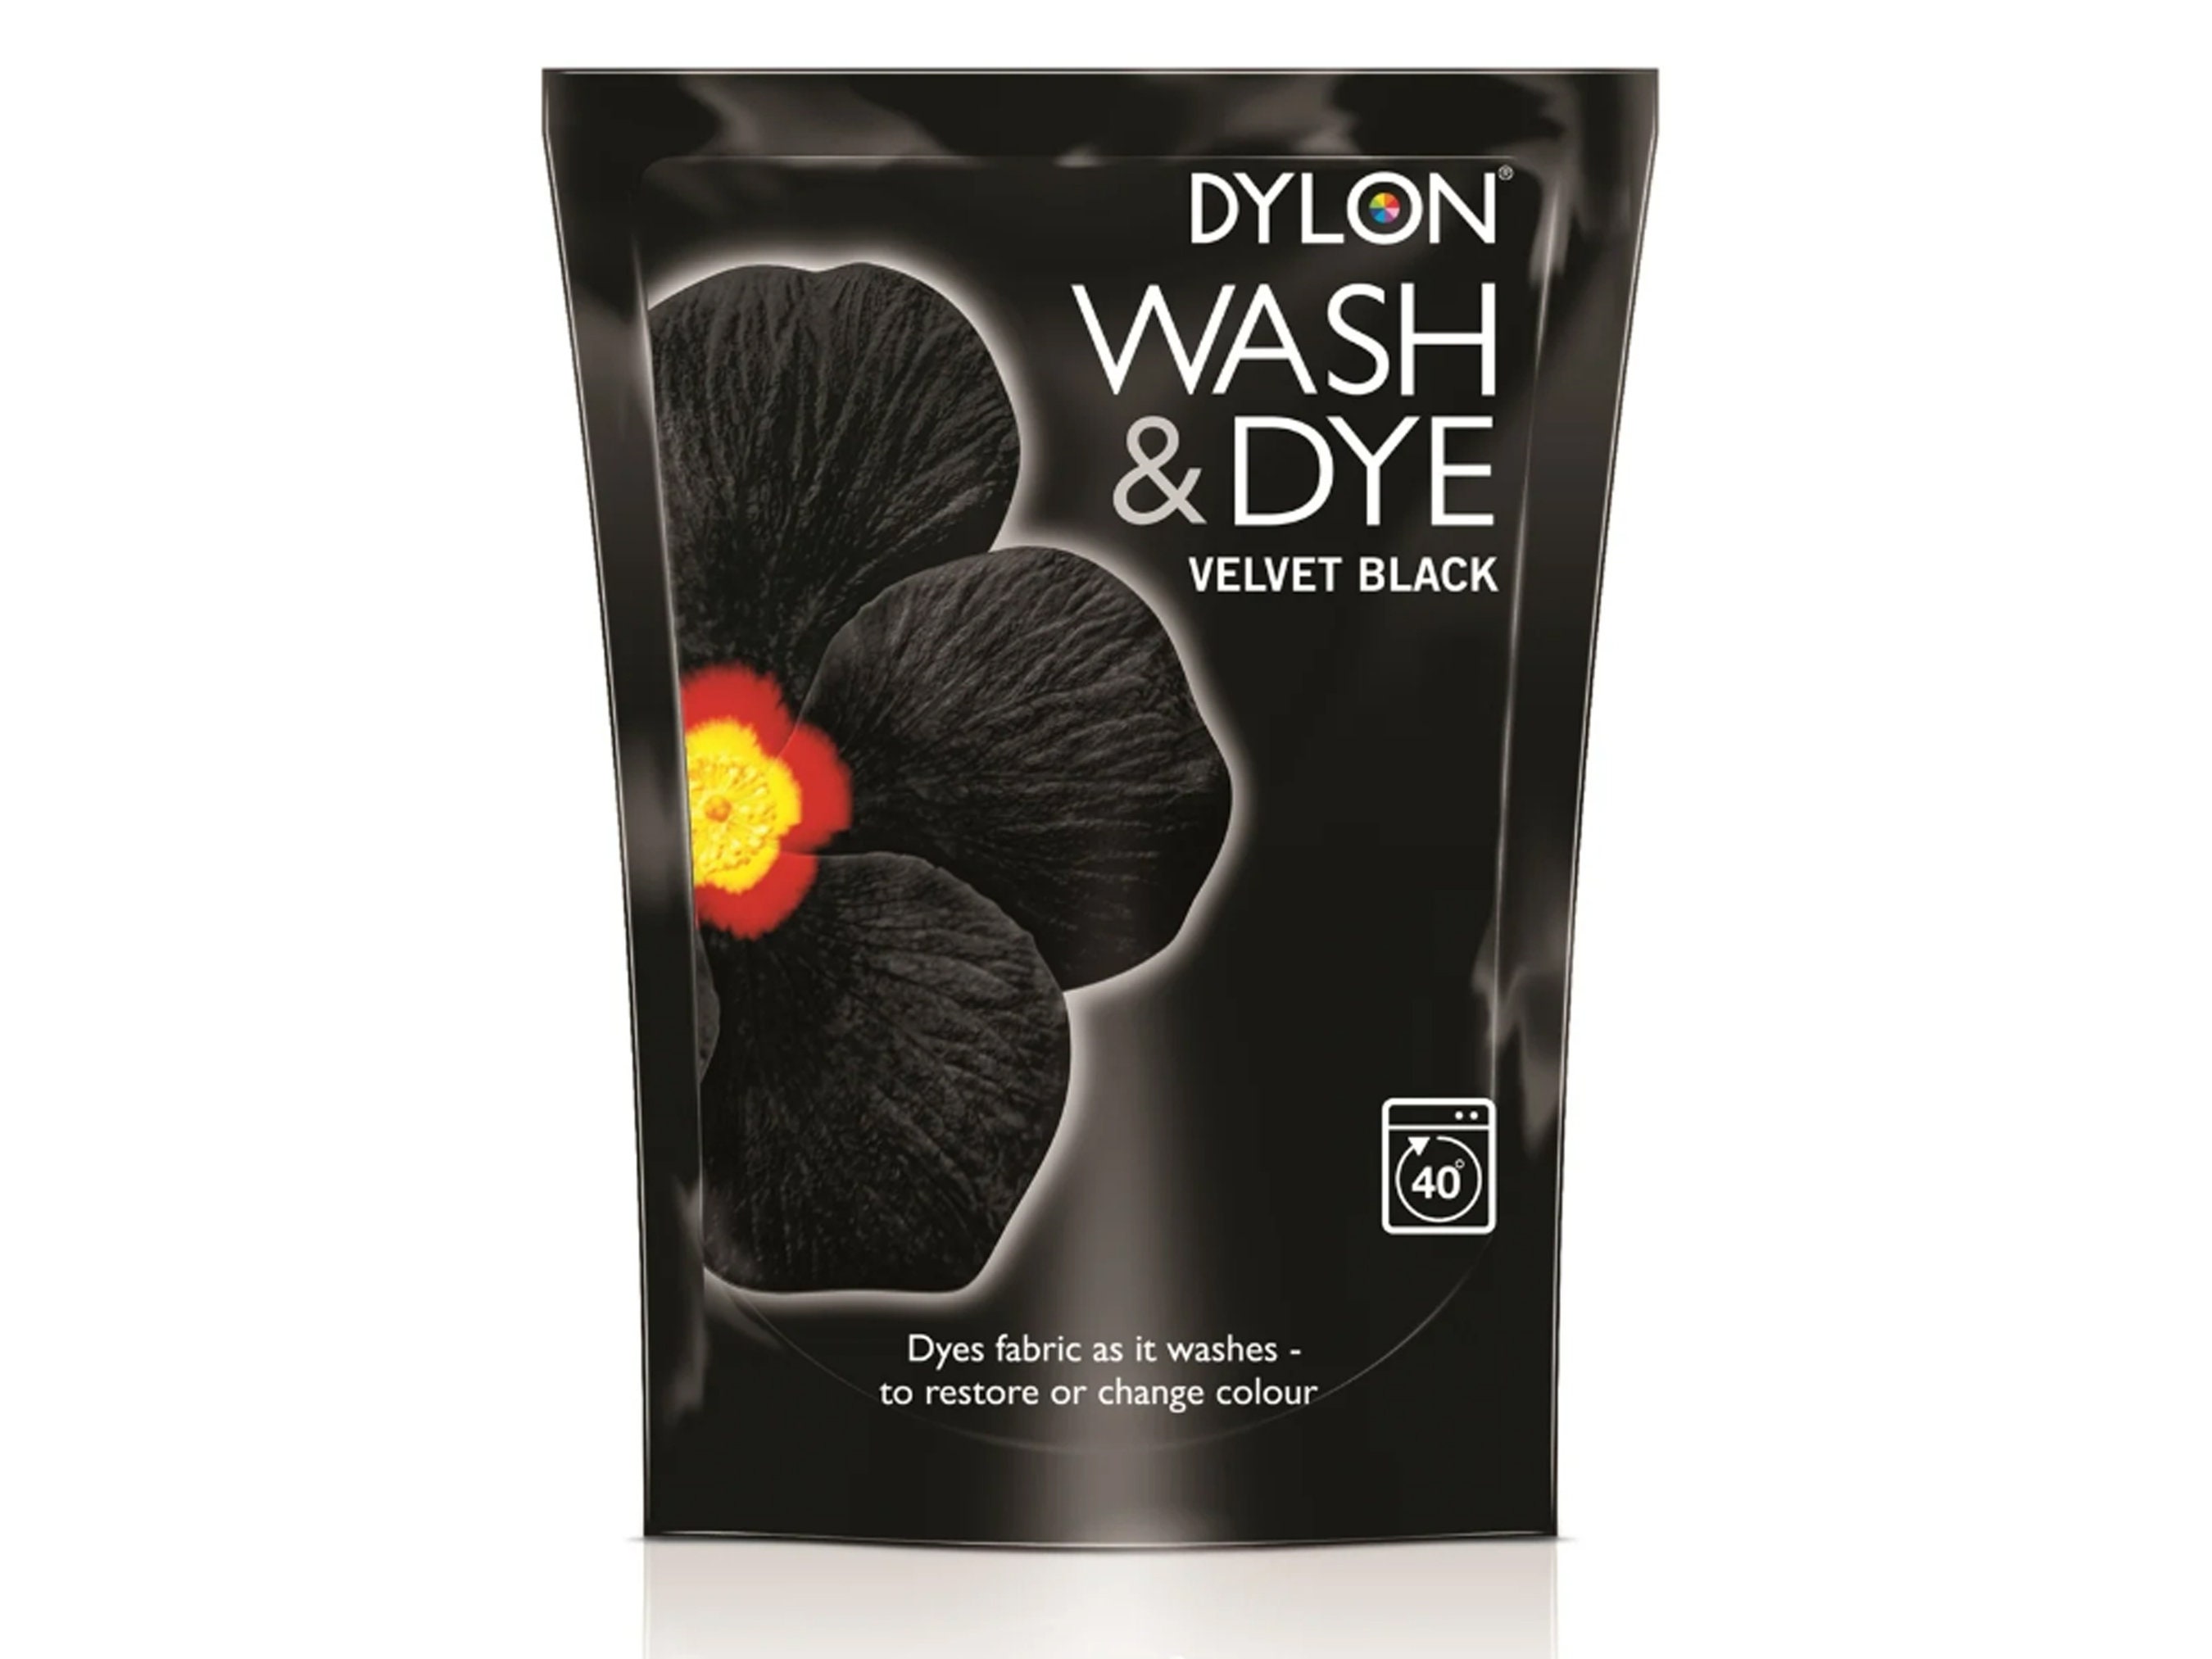 Dylon Washing Machine Fabric Dye Pod Intense Black, 350g 